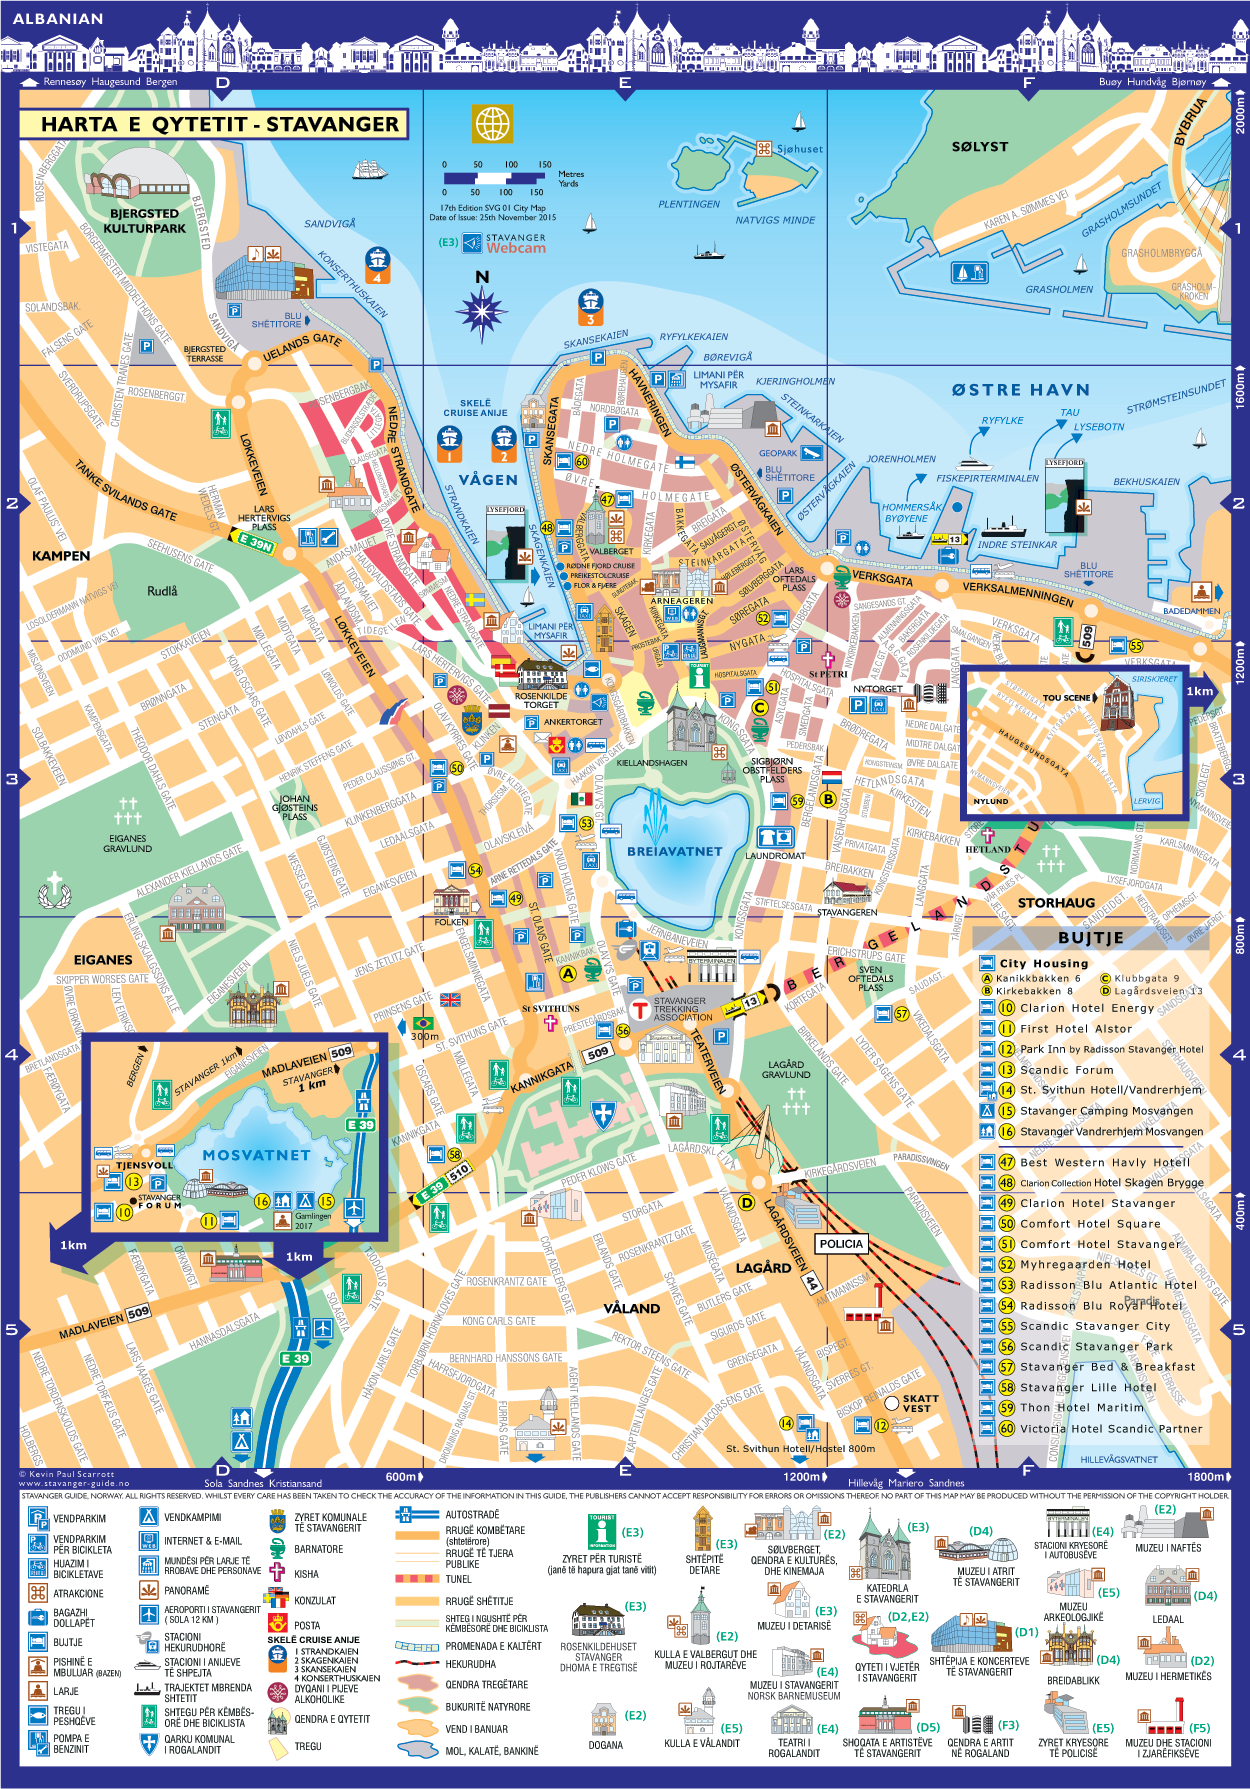 Harta e qytetit Stavanger